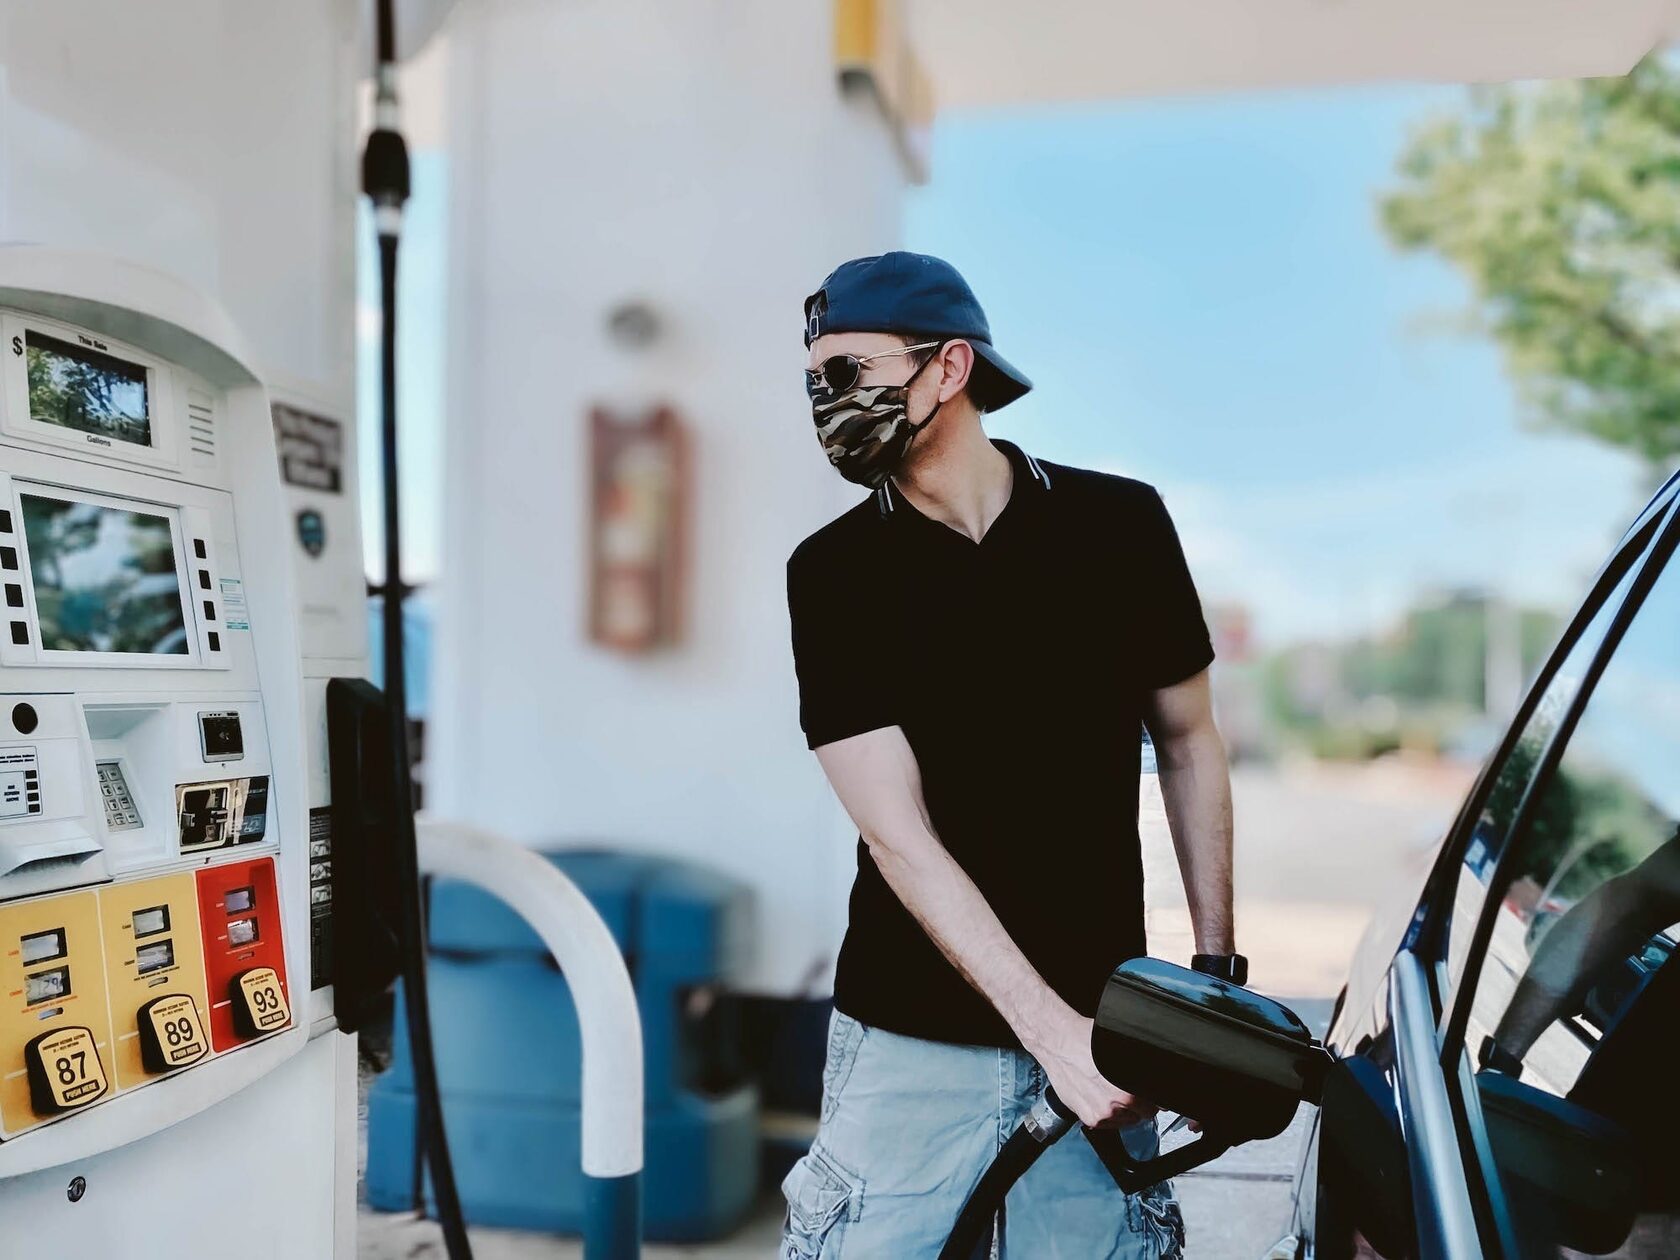 Цены на бензин в США упала ниже 4 долларов за галлон впервые за 5 месяцев